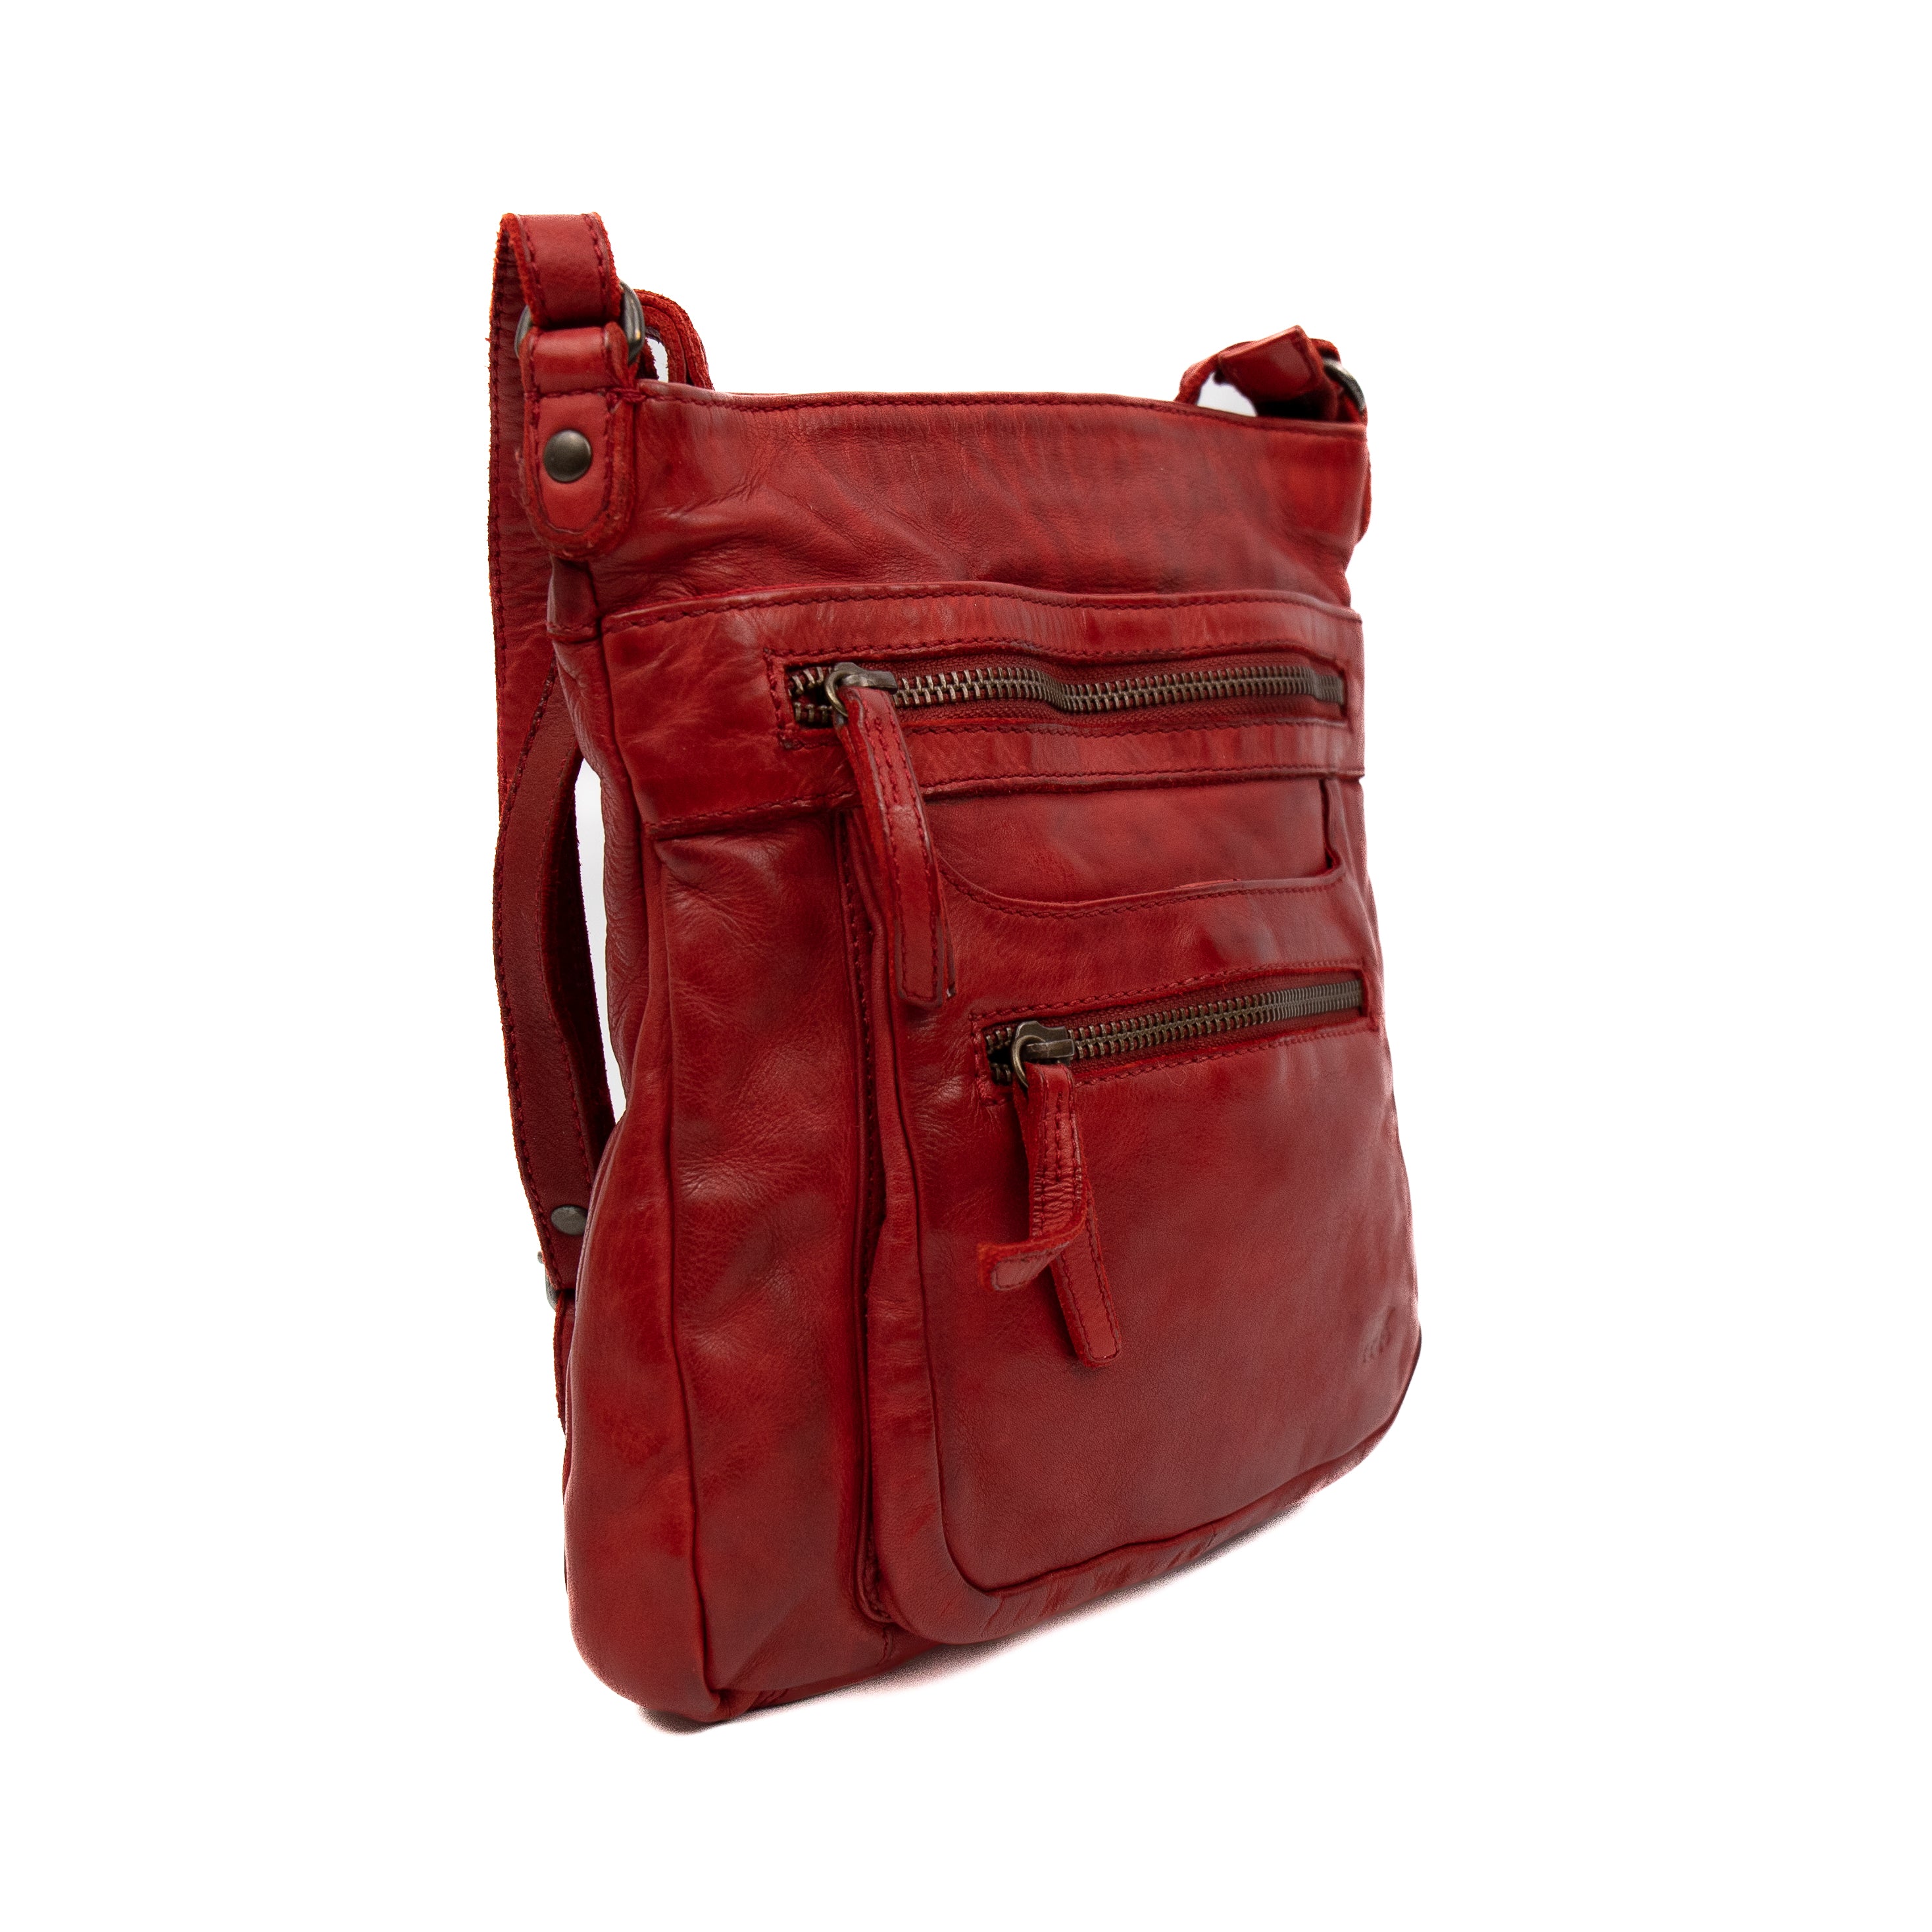 Shoulder bag 'Marion' red - CL 40496